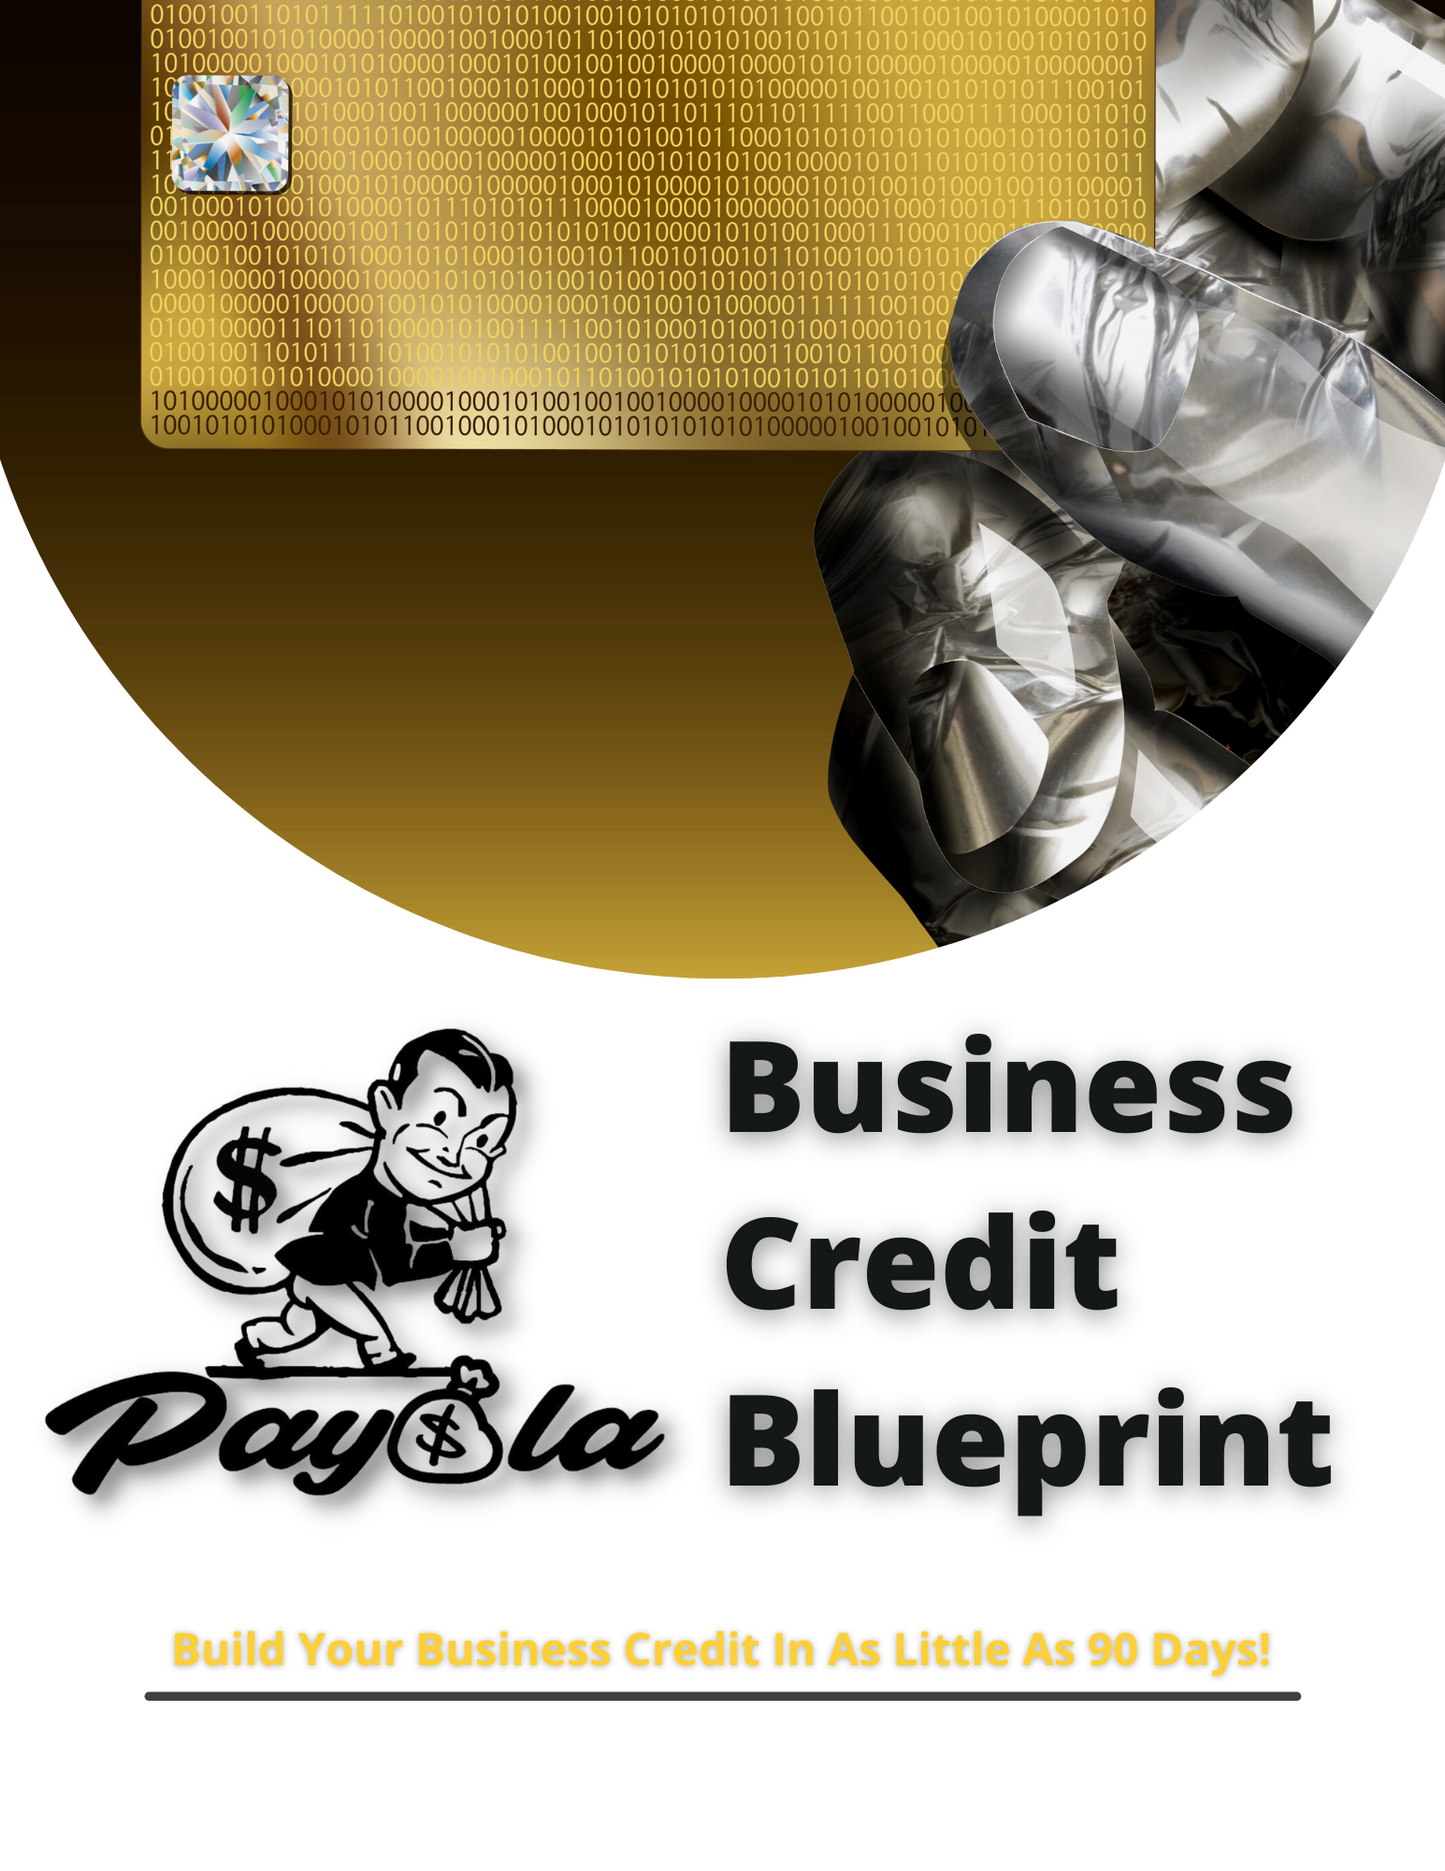 Business Credit E-Book & Guide